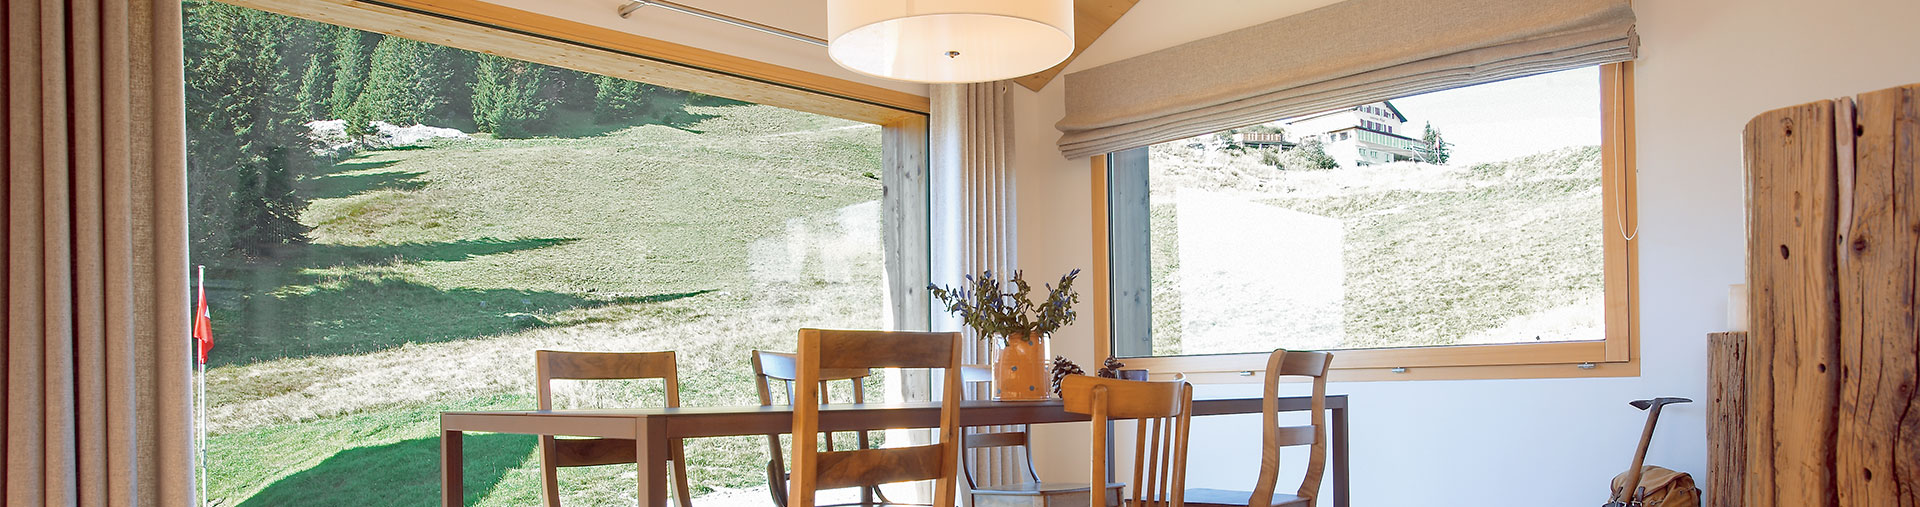 Porta scorrevole in legno, sala da pranzo con grandi elementi di finestra